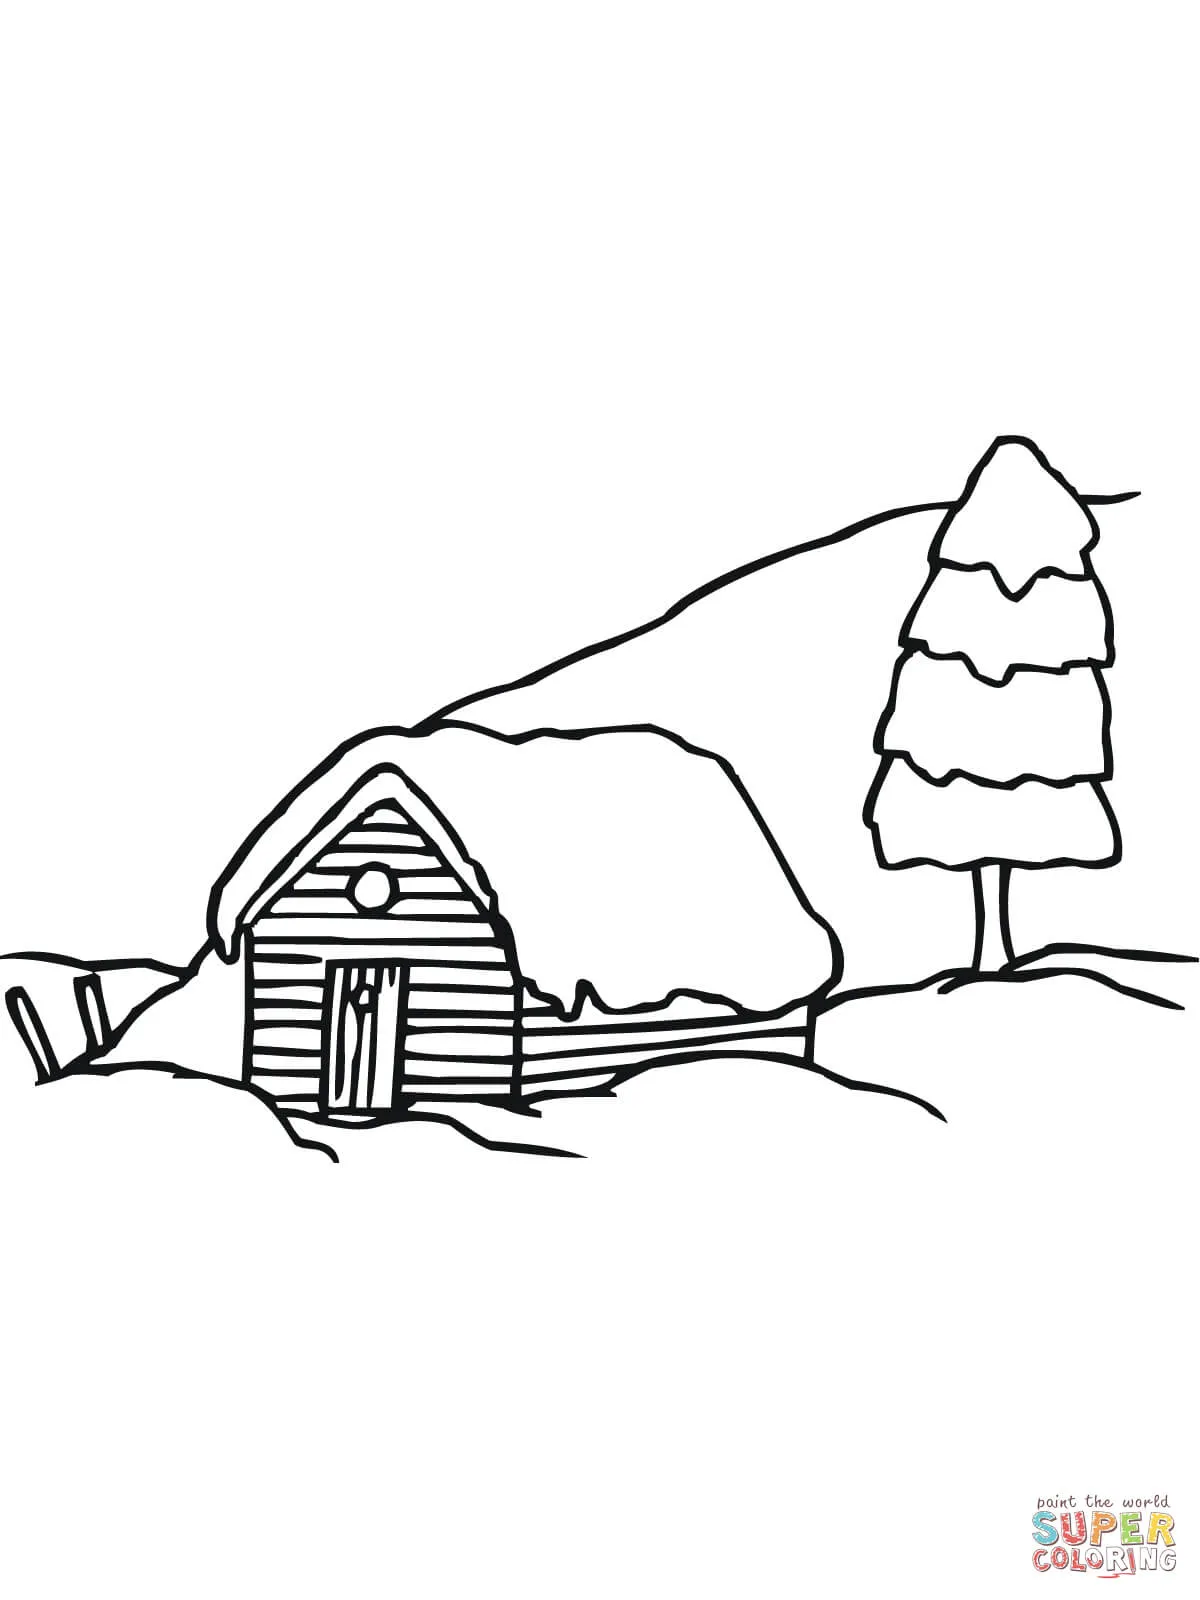 Dibujo de Paisaje Rural Sueco en Invierno para colorear | Dibujos ...